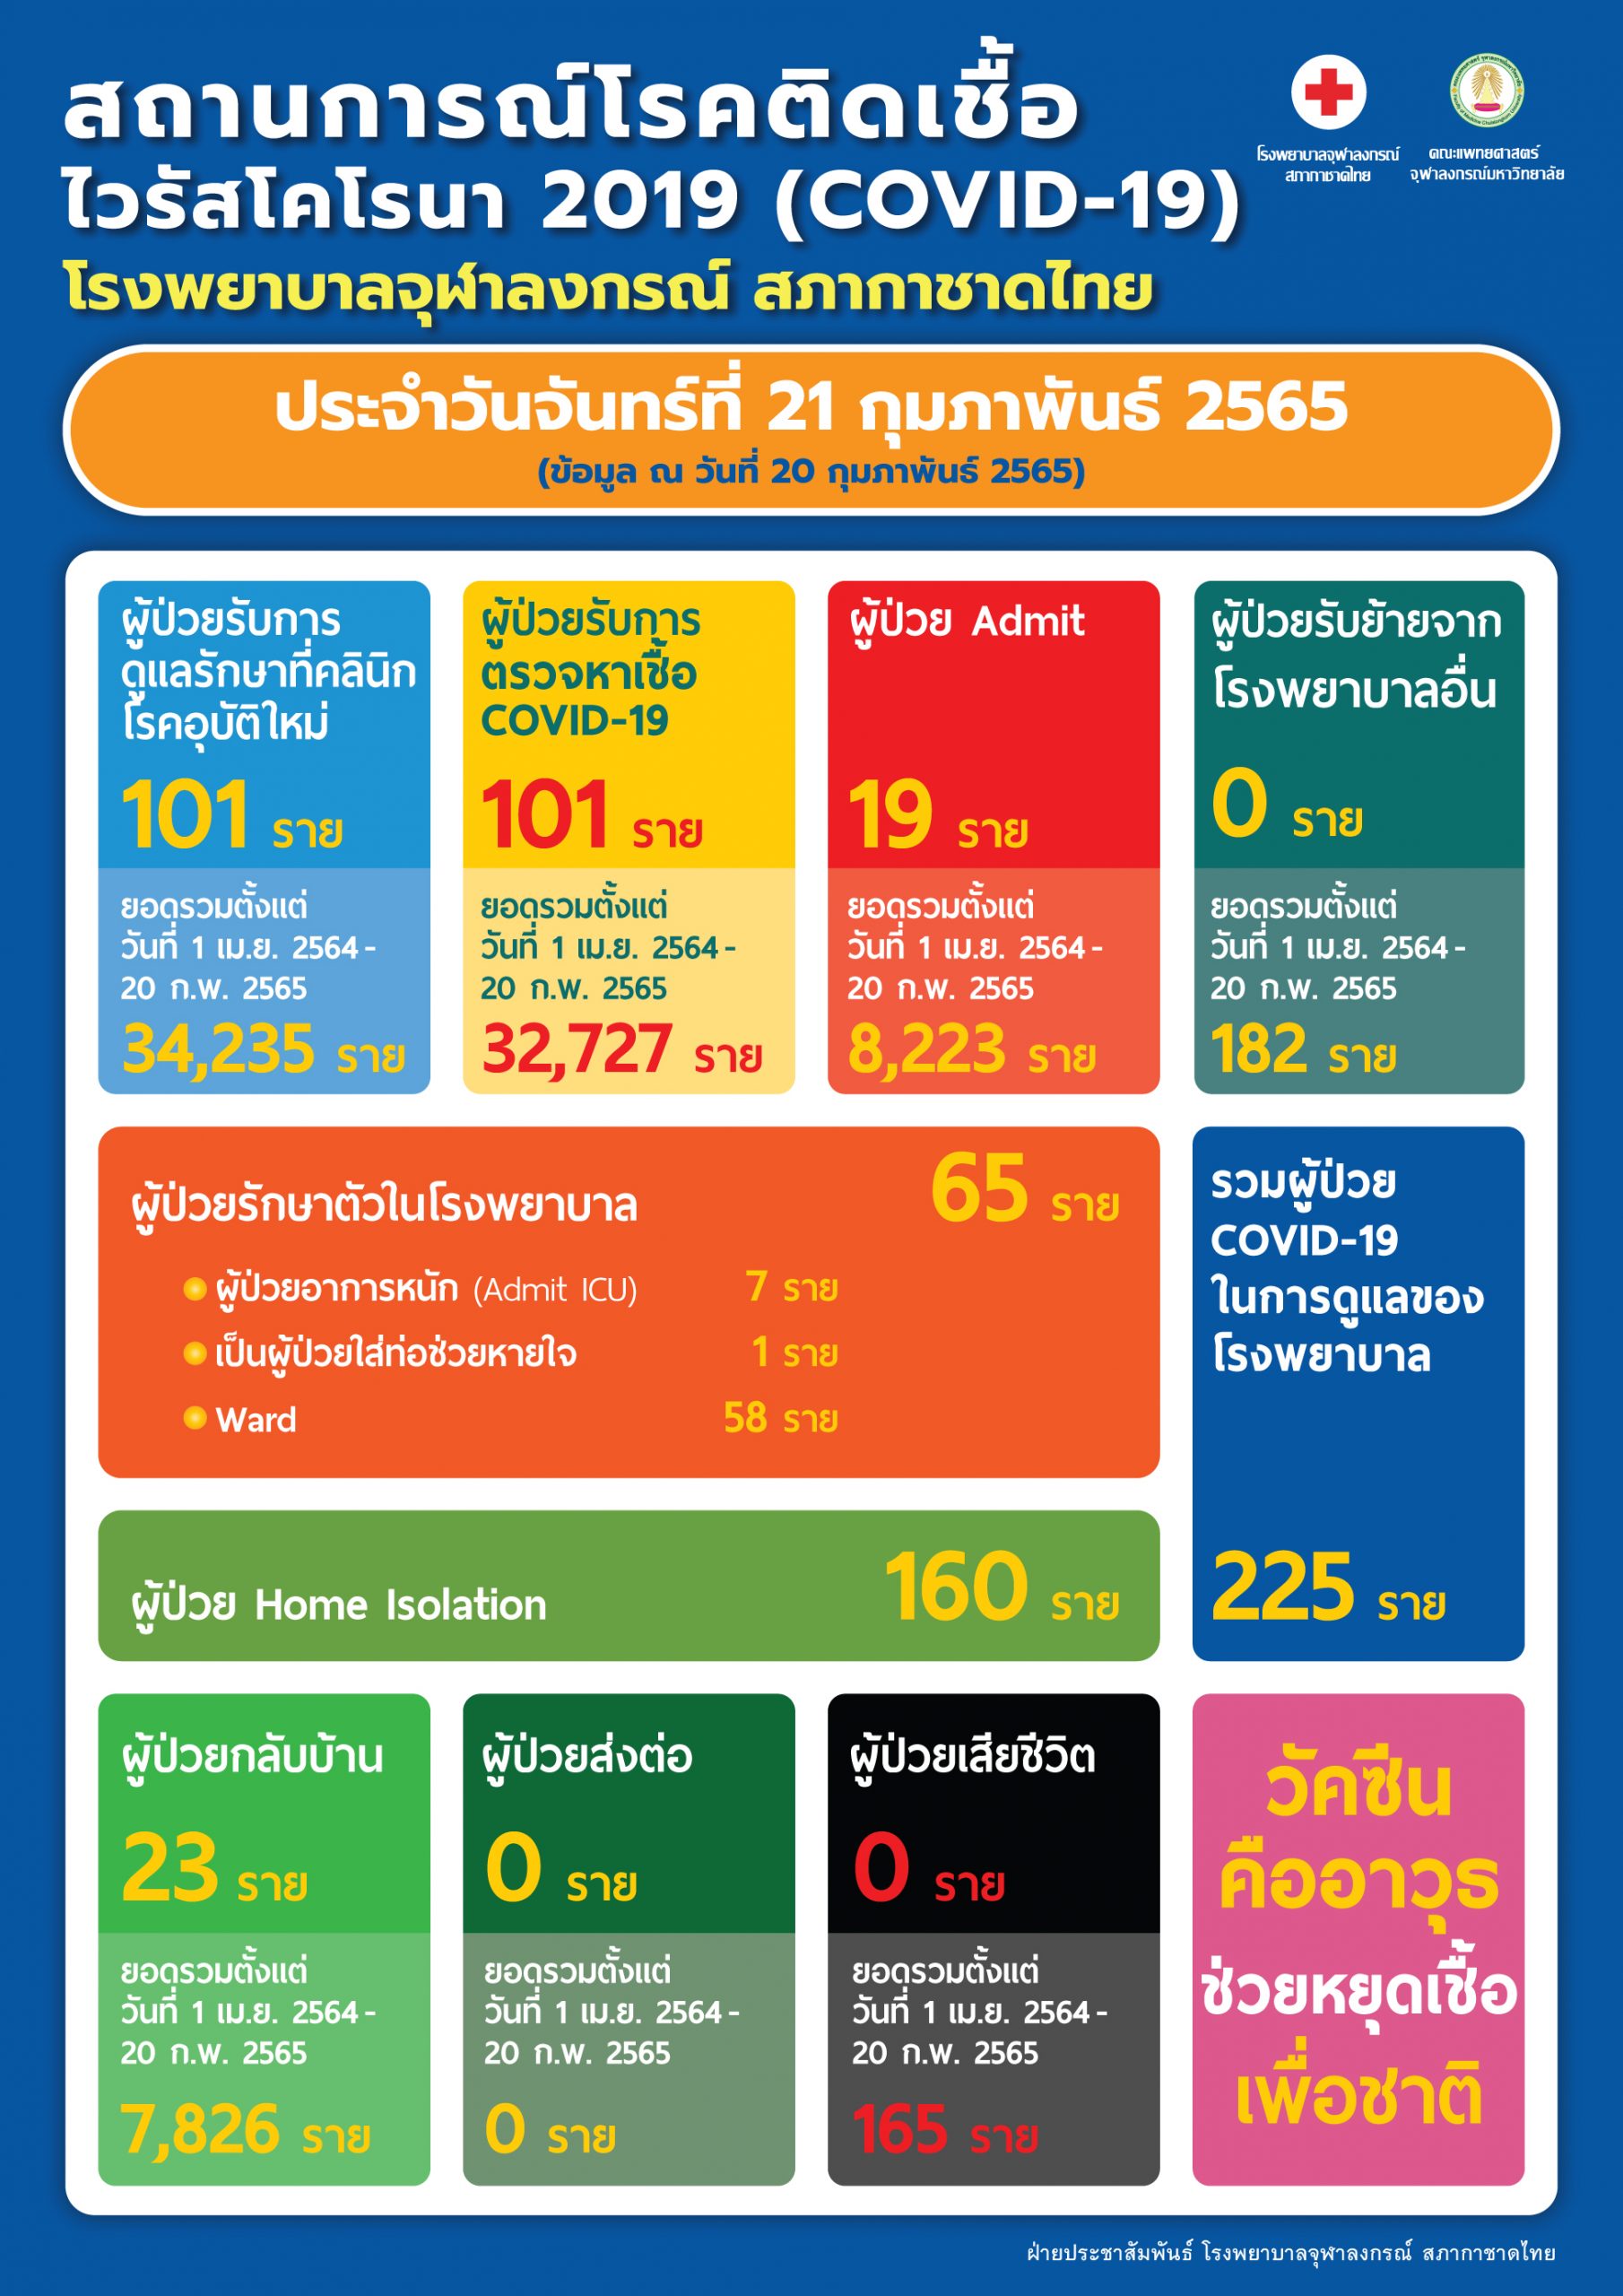 สถานการณ์โรคติดเชื้อไวรัสโคโรนา 2019 (COVID-19) โรงพยาบาลจุฬาลงกรณ์ สภากาชาดไทย ประจำวันจันทร์ที่ 21 กุมภาพันธ์ 2565